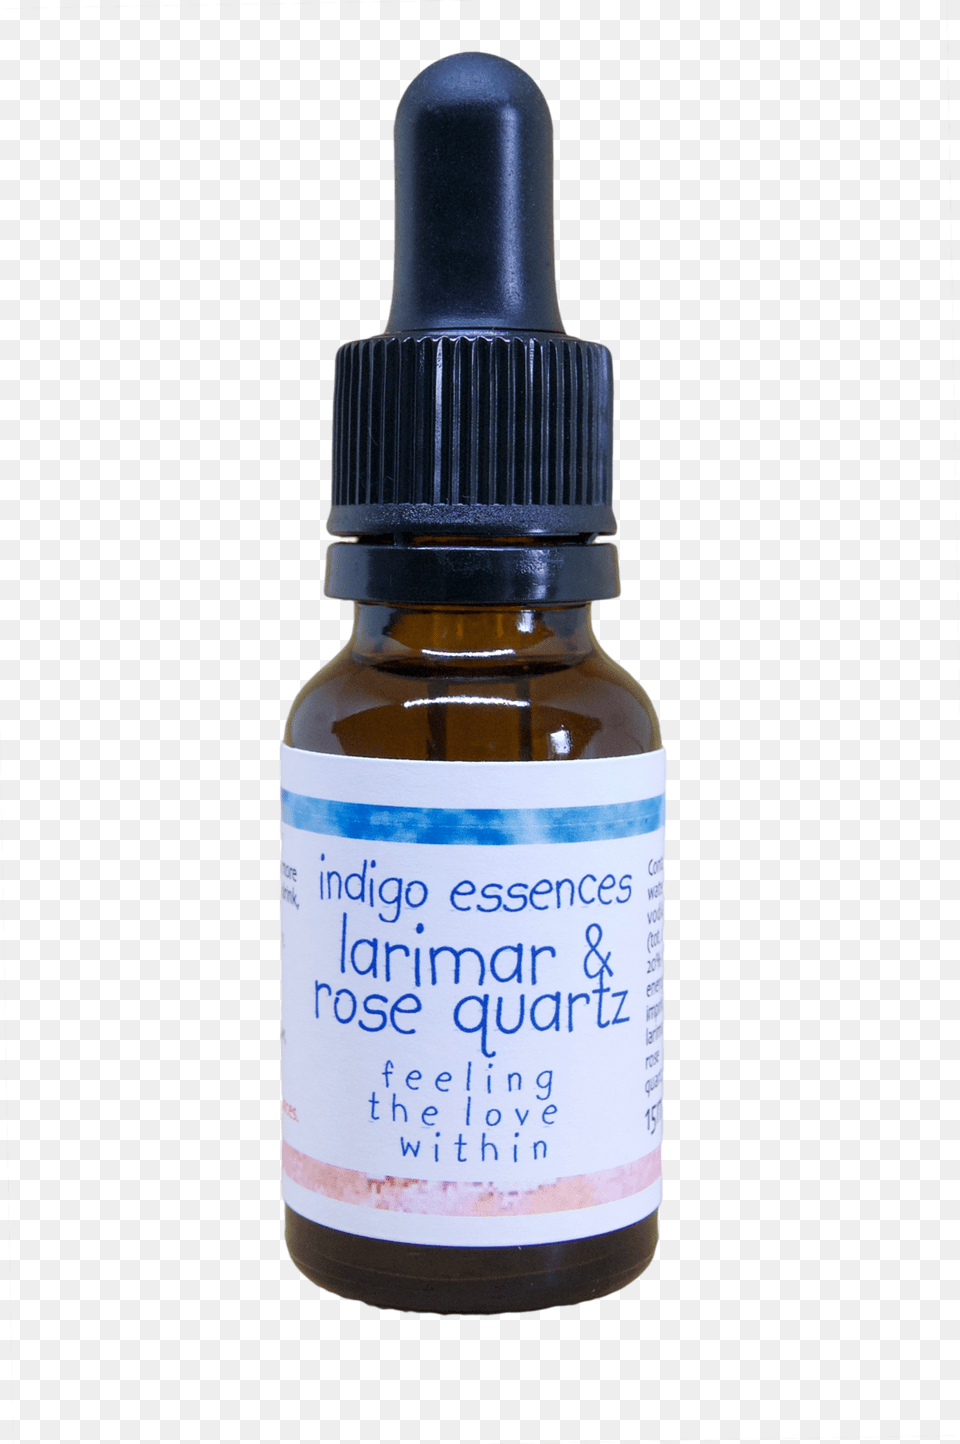 Larimar Amp Rose Quartz, Bottle, Shaker Png Image